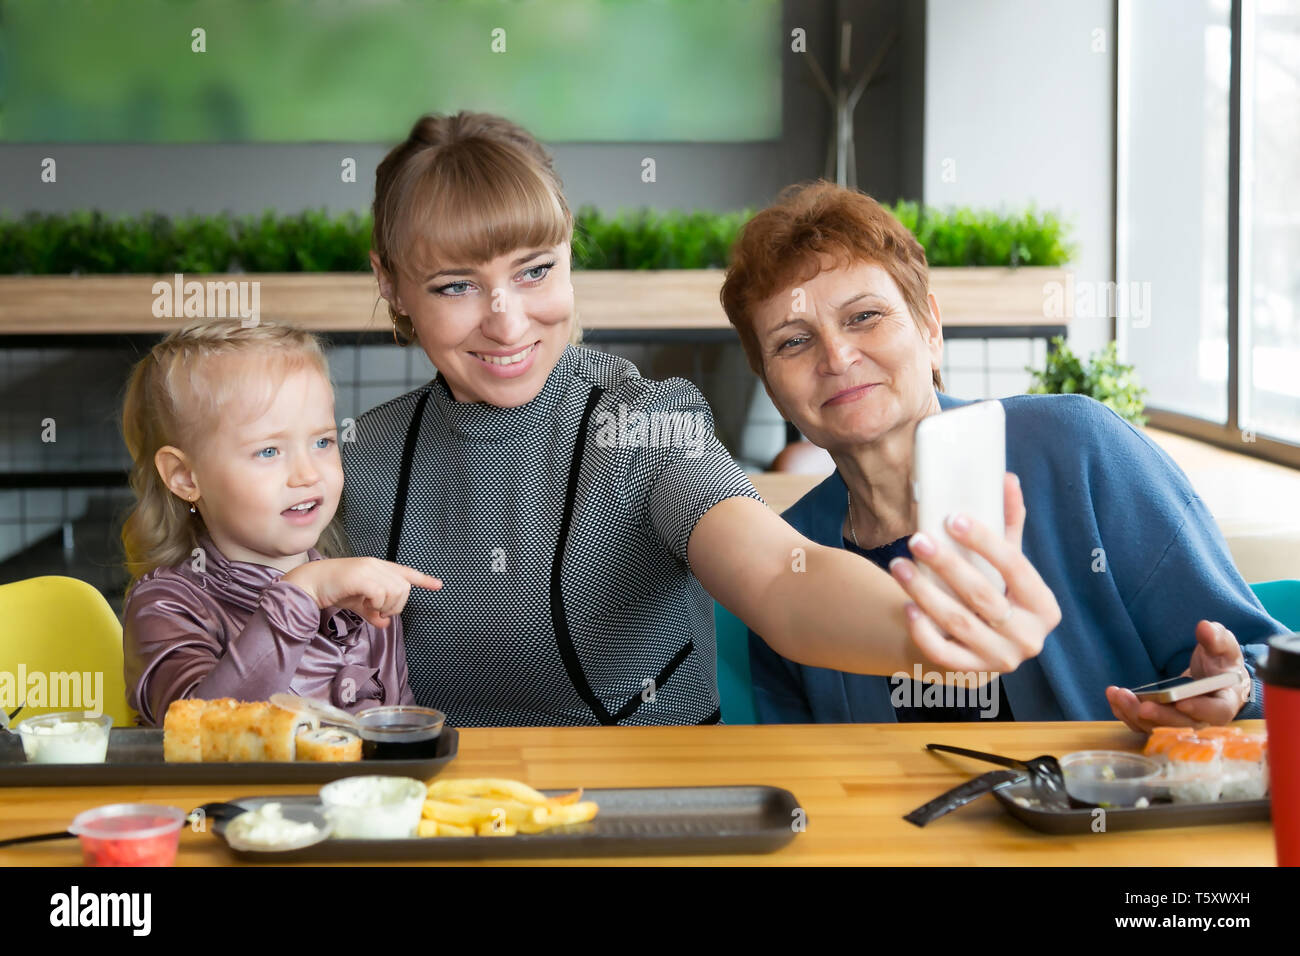 Eine junge Frau nimmt ein Bild von sich selbst auf einem Smartphone mit einem älteren Mutter und Tochter. Stockfoto